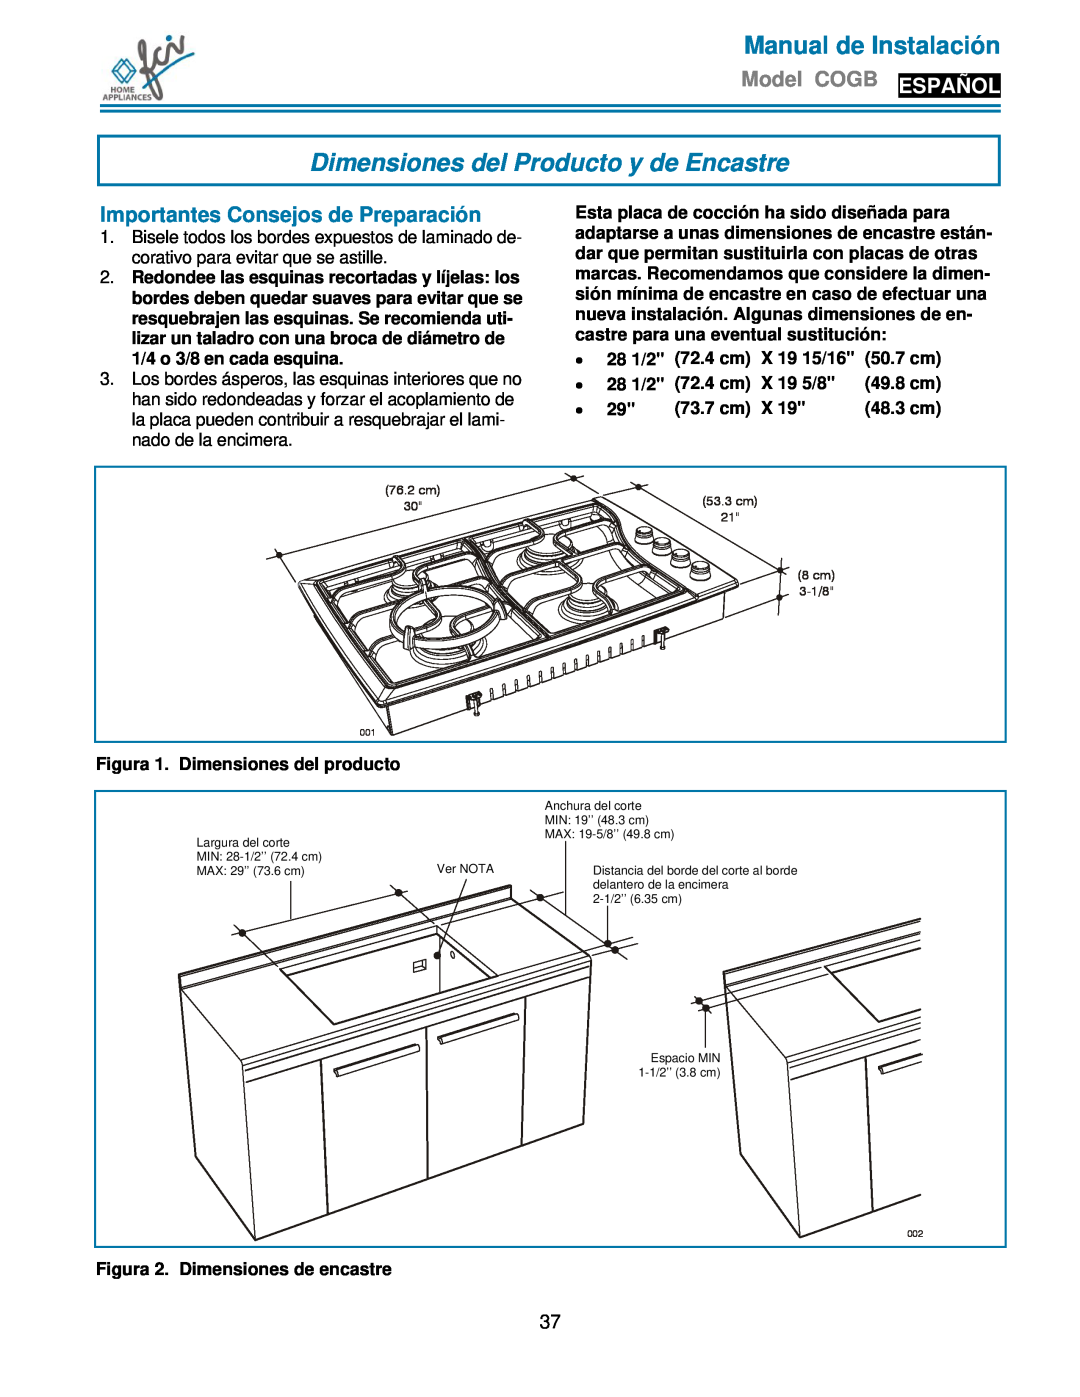 FCI Home Appliances COGB 33060/L/BL Dimensiones del Producto y de Encastre, Importantes Consejos de Preparación, 73.7 cm 